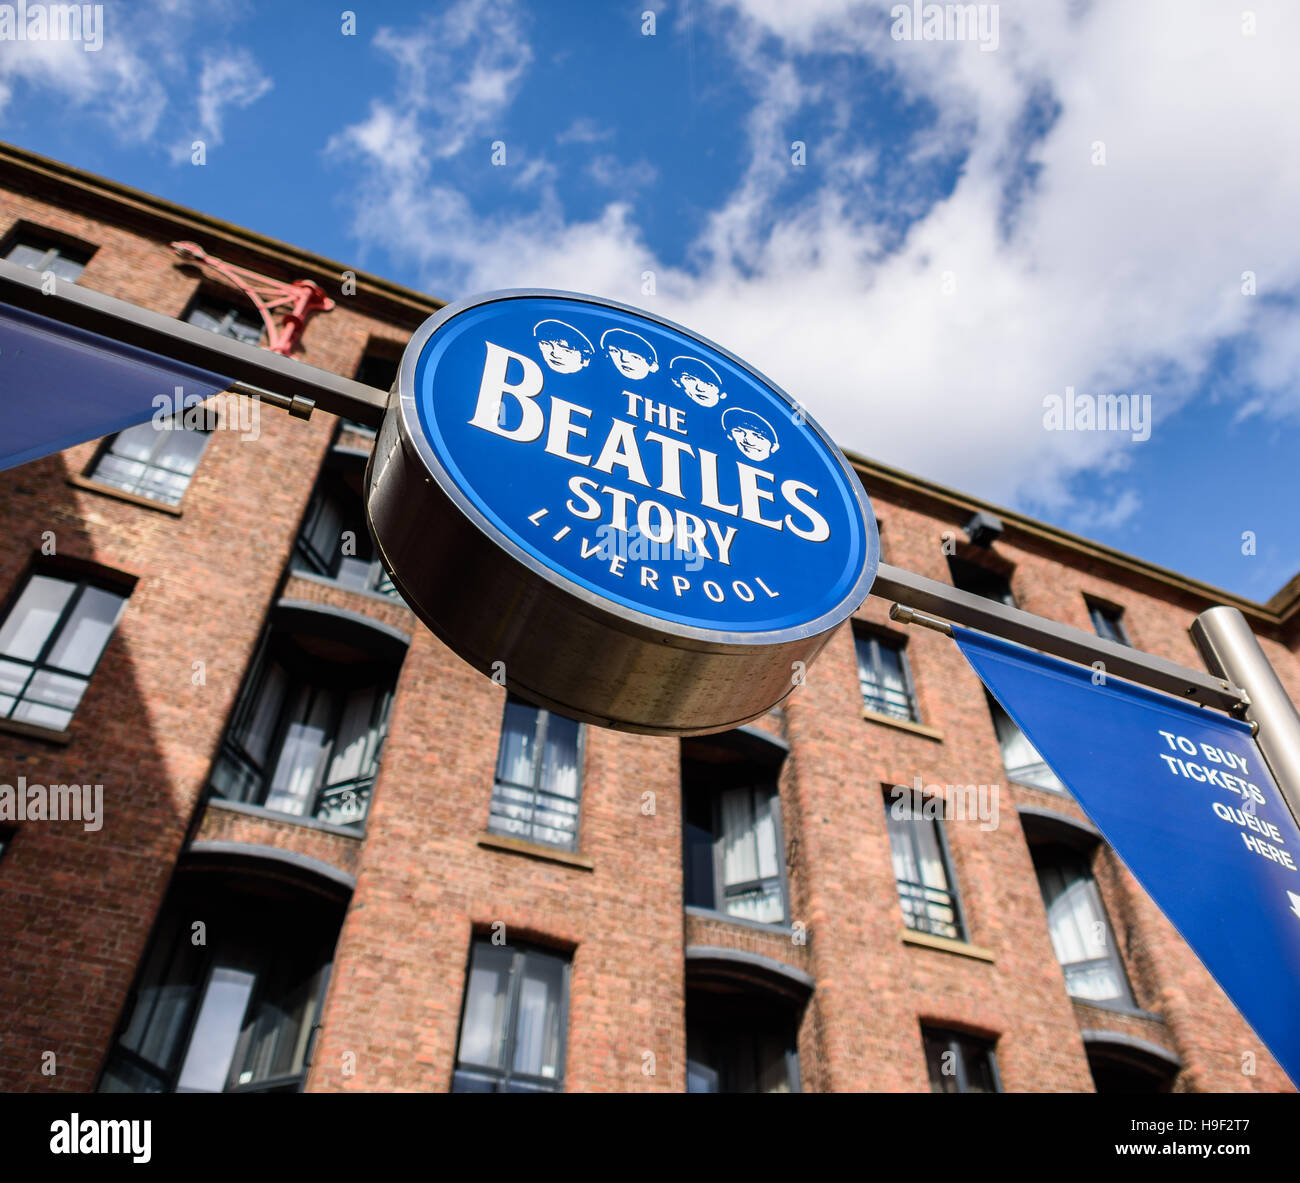 Das Zeichen für "The Beatles Story" Ausstellung am Albert Dock in Liverpool. * REDAKTION NUR * Stockfoto